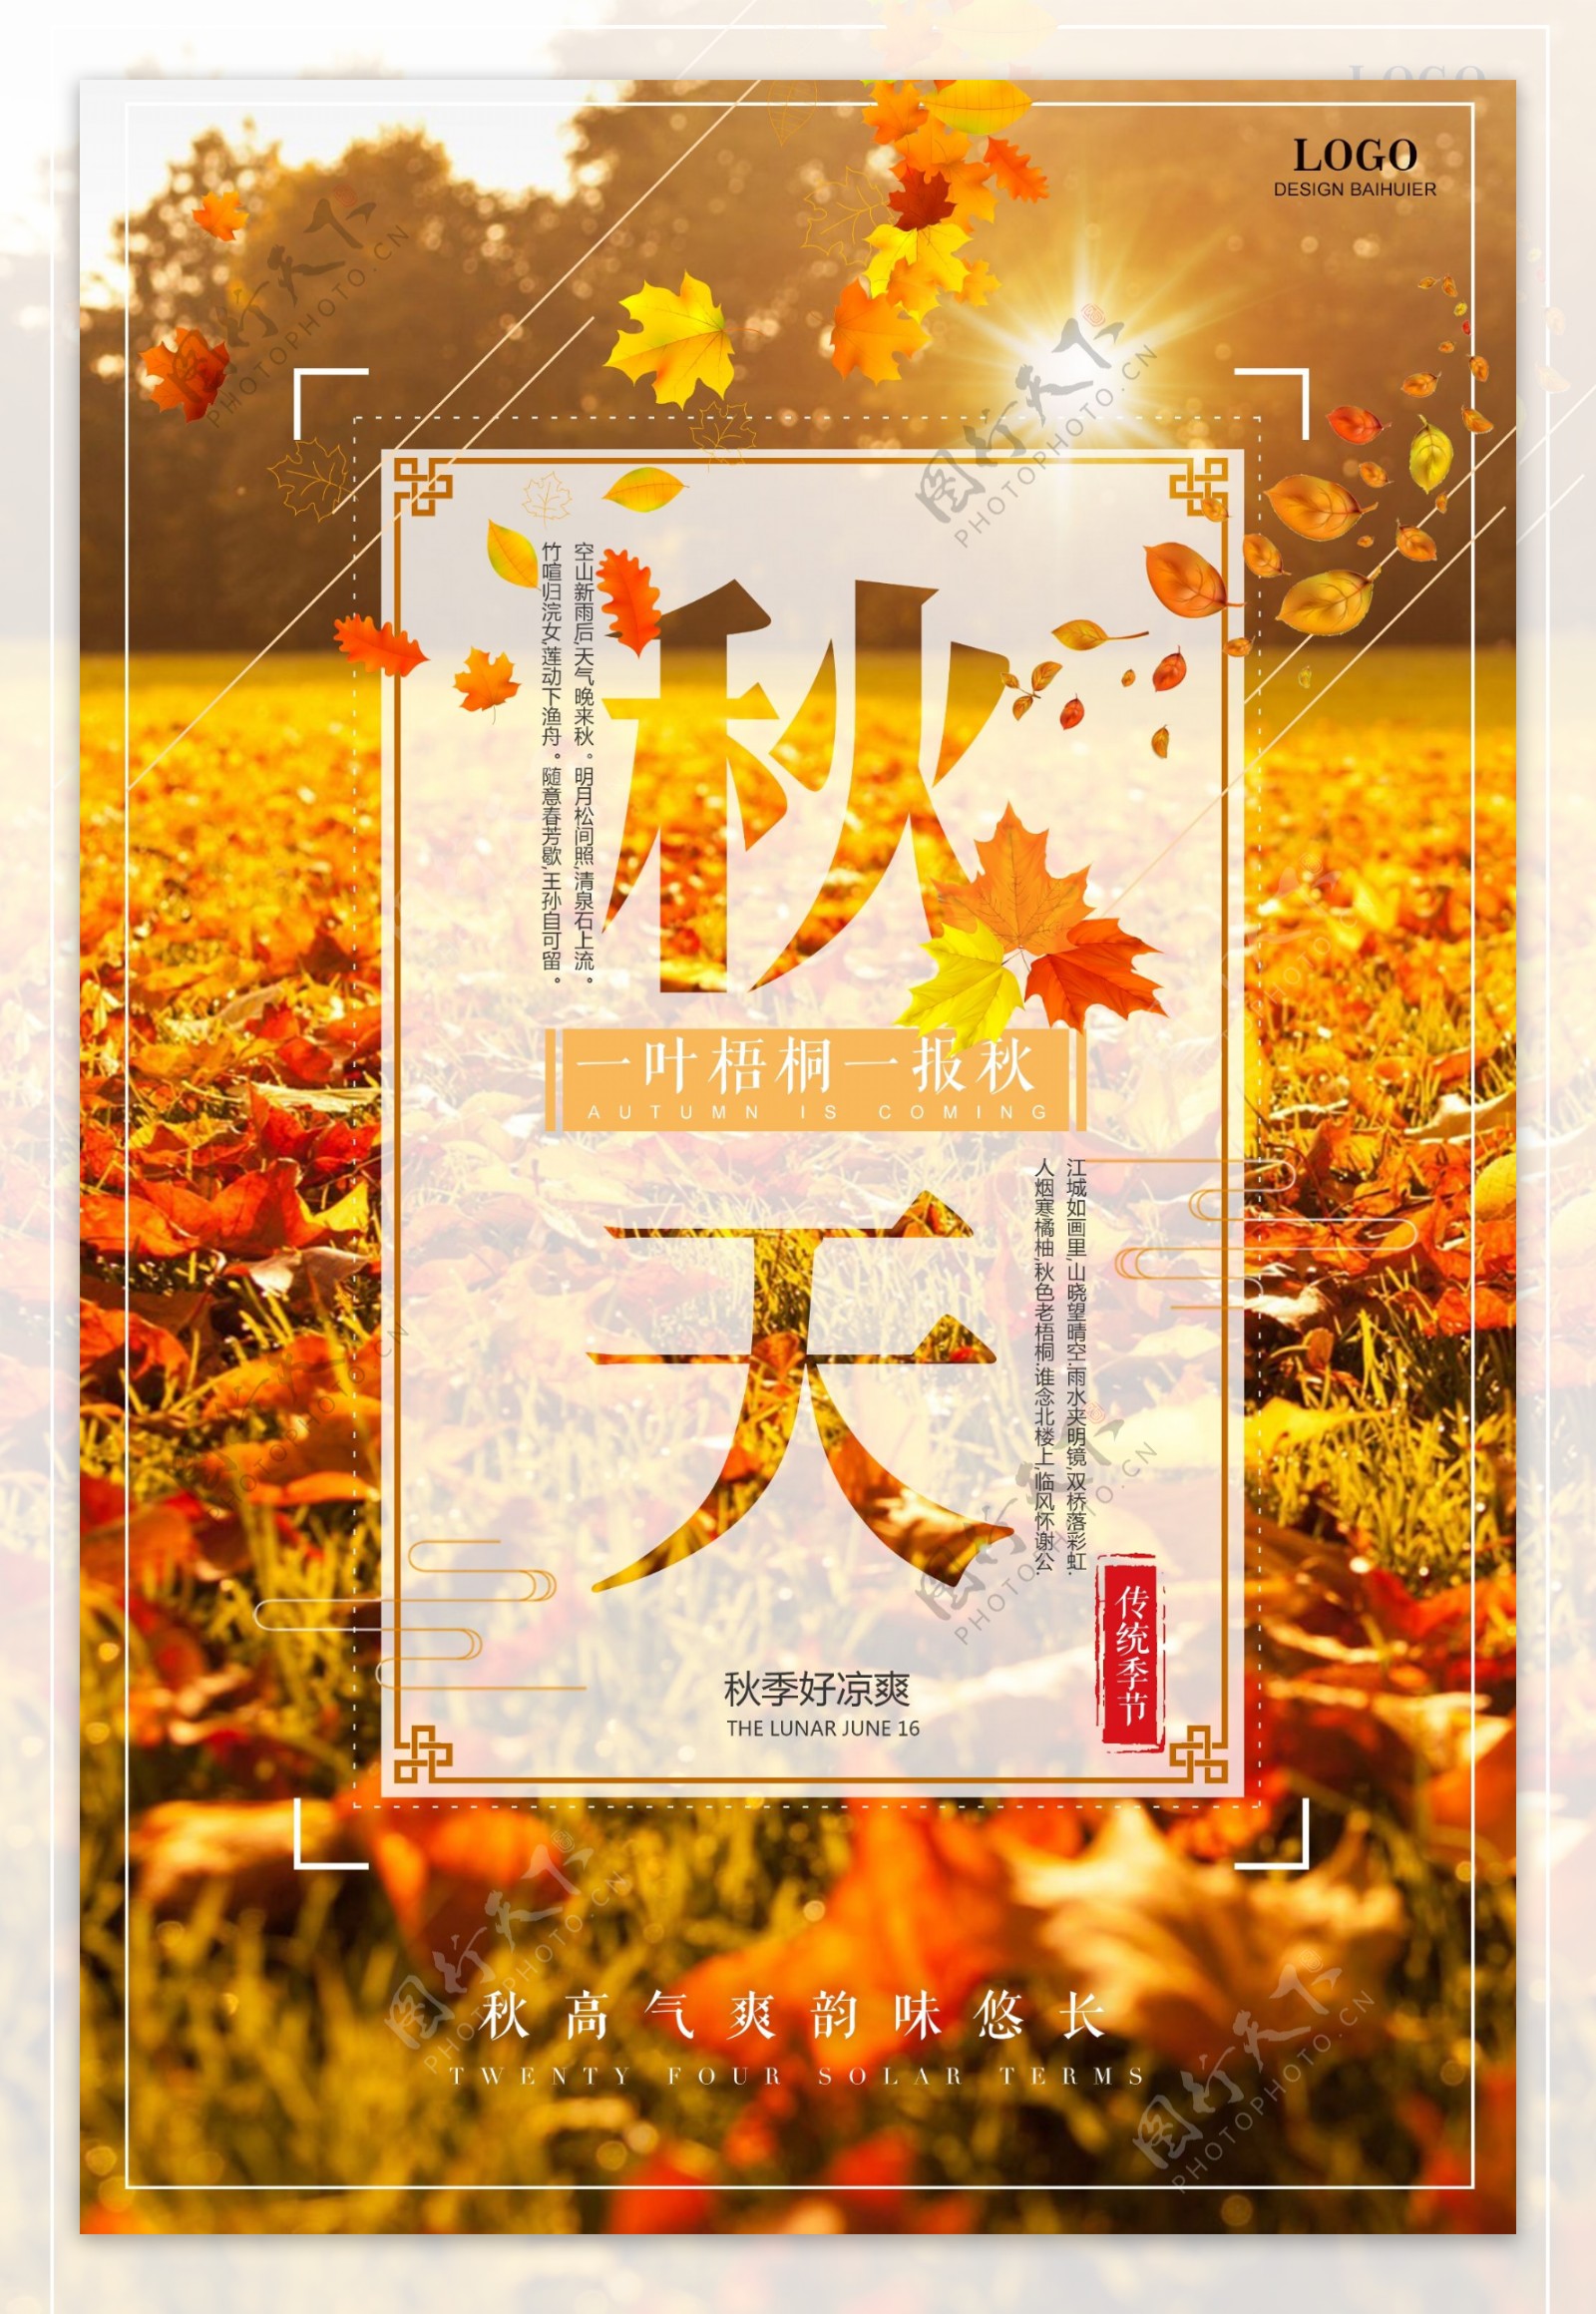 秋天秋季秋分促销海报设计模板